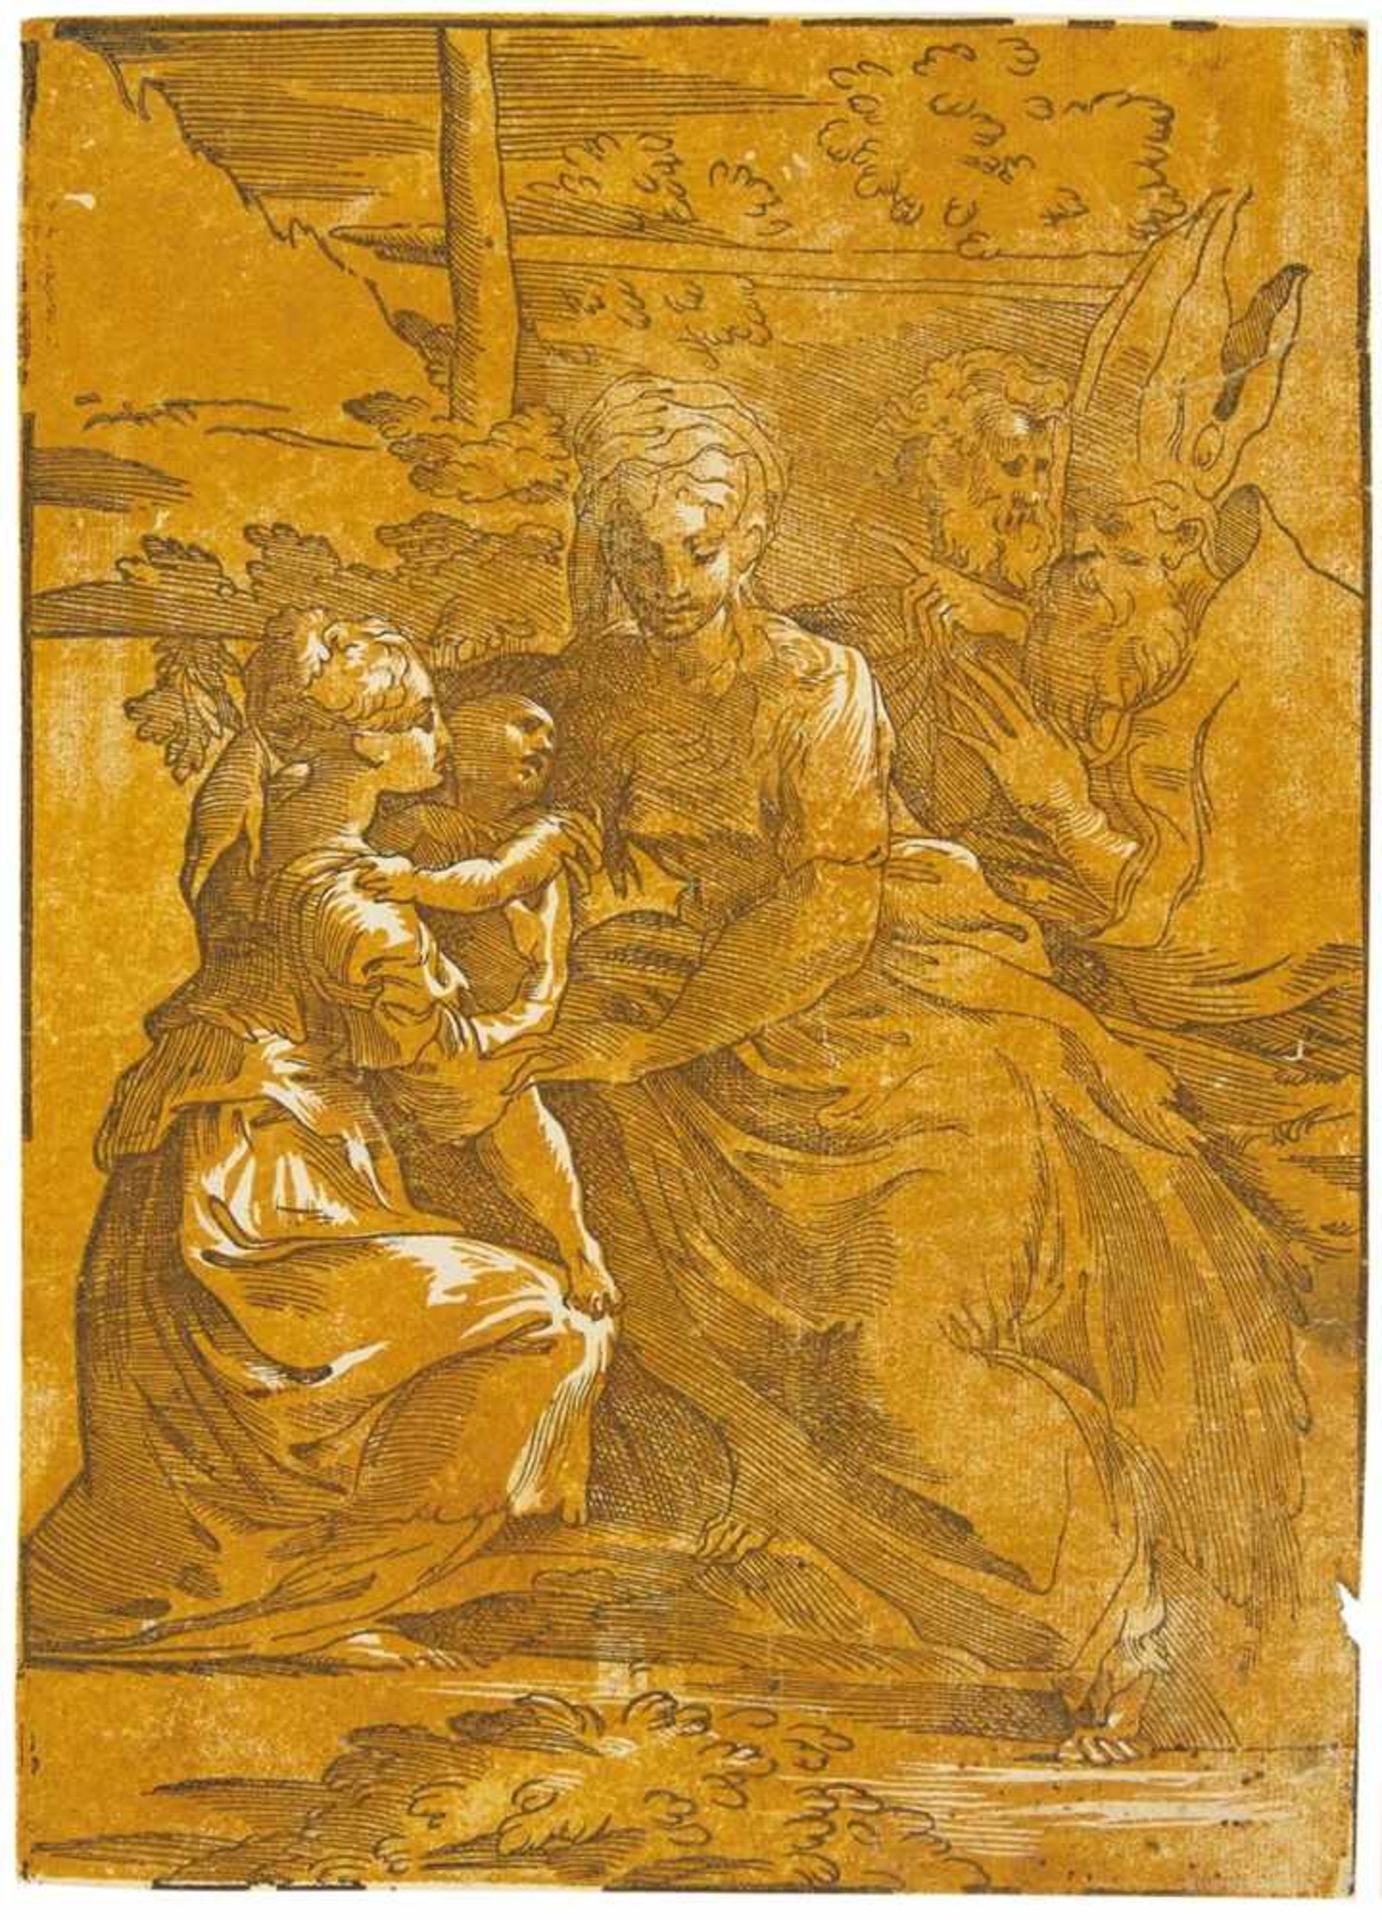 ANDREA ANDREANIMantua 1558/59 - 1629Die Jungfrau mit verschiedenen Heiligen. Clair-obscur-